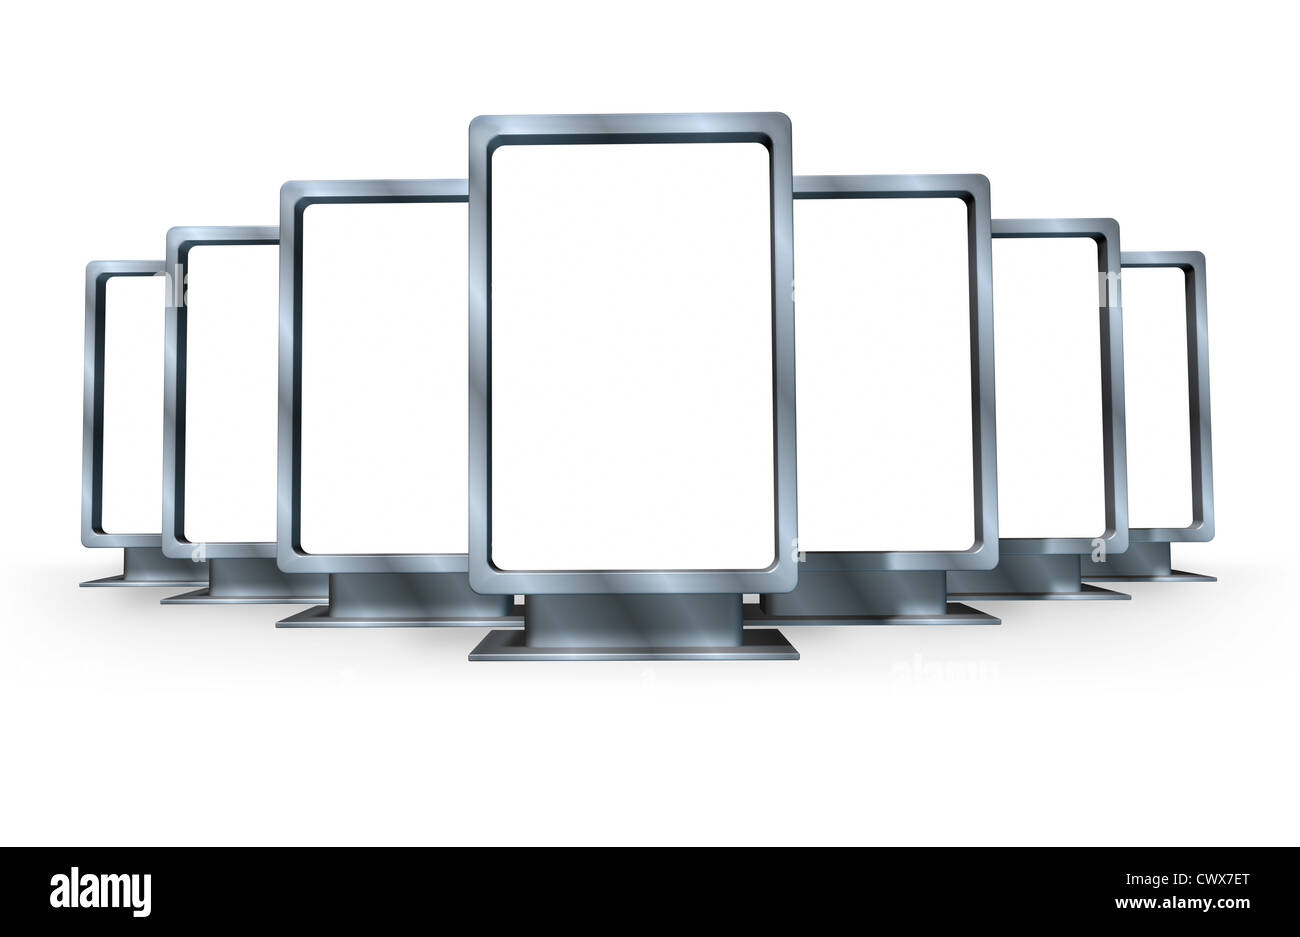 Campagne de marketing et de publicité avec de multiples panneaux verticale blanche faite de métal brillant dans différents angles représentant un écran de vente pour une petite annonce pour la vente de biens et servisces pour une entreprise . Banque D'Images